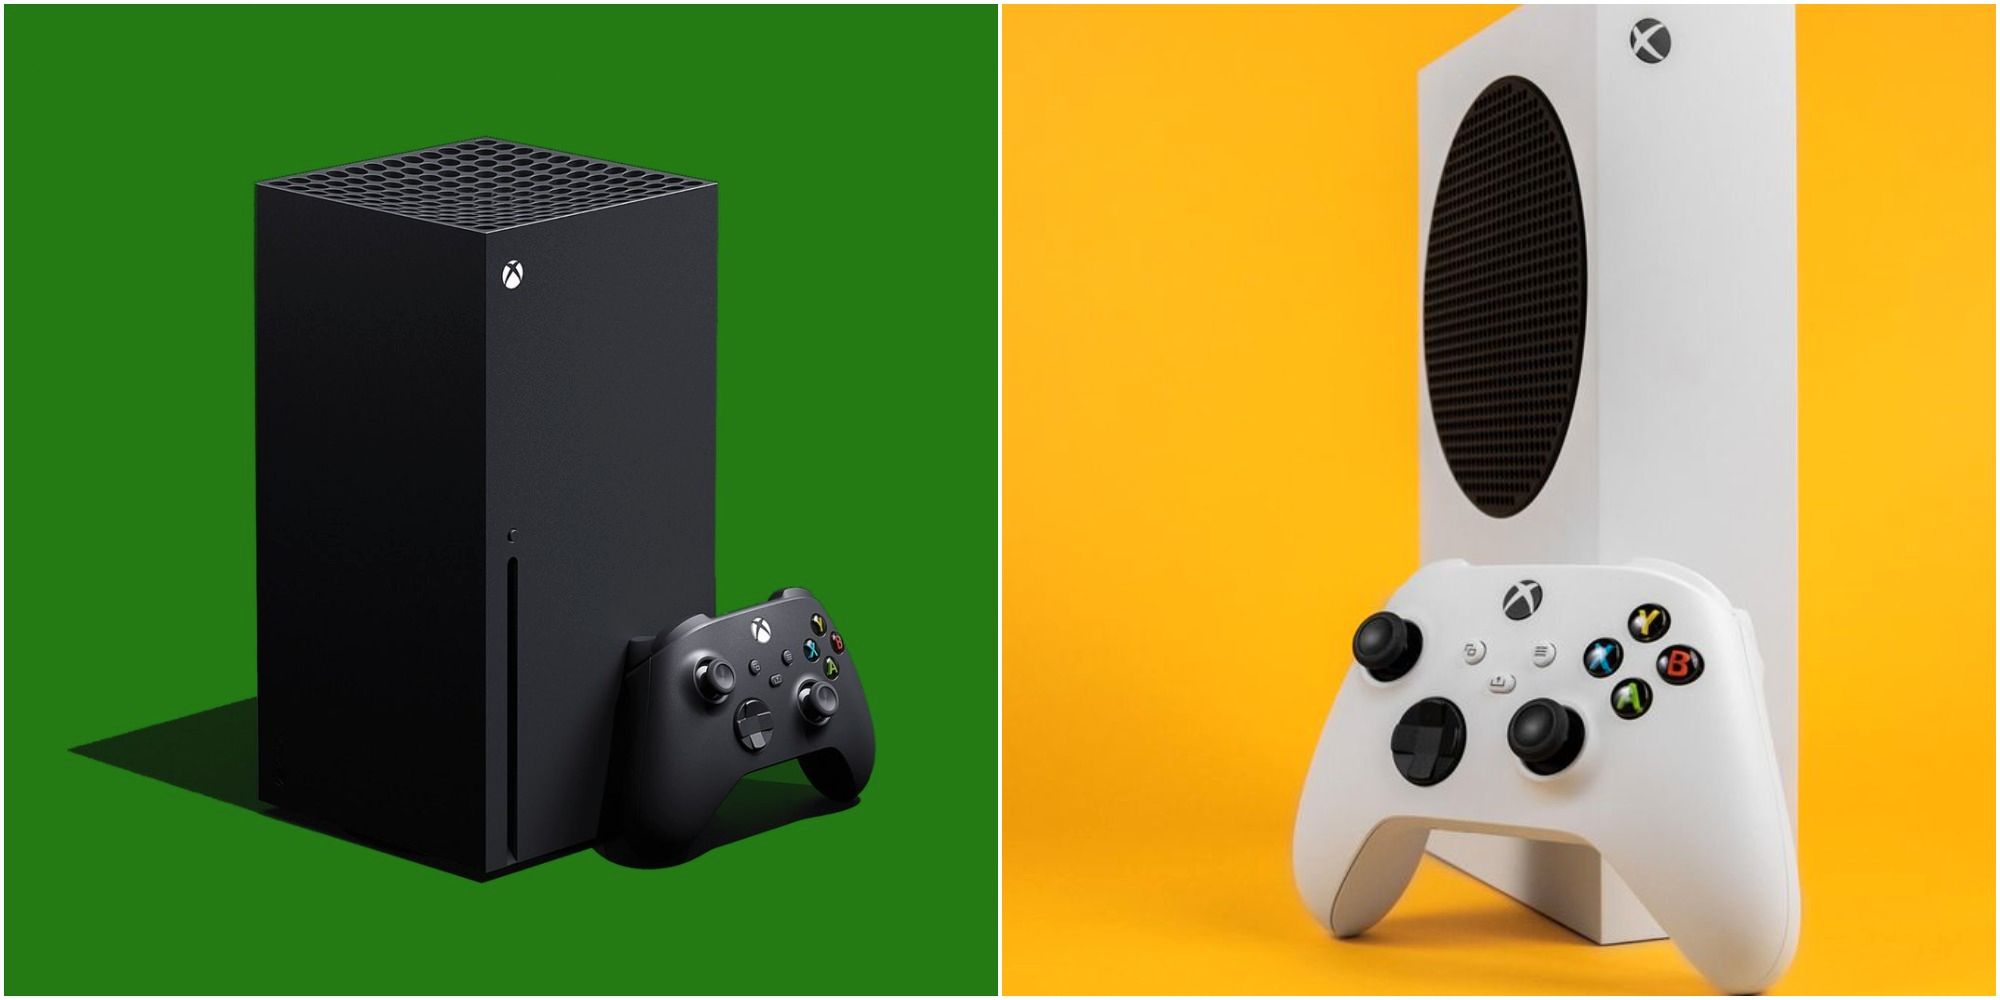 10 häufige Missverständnisse über die Xbox Series X/S